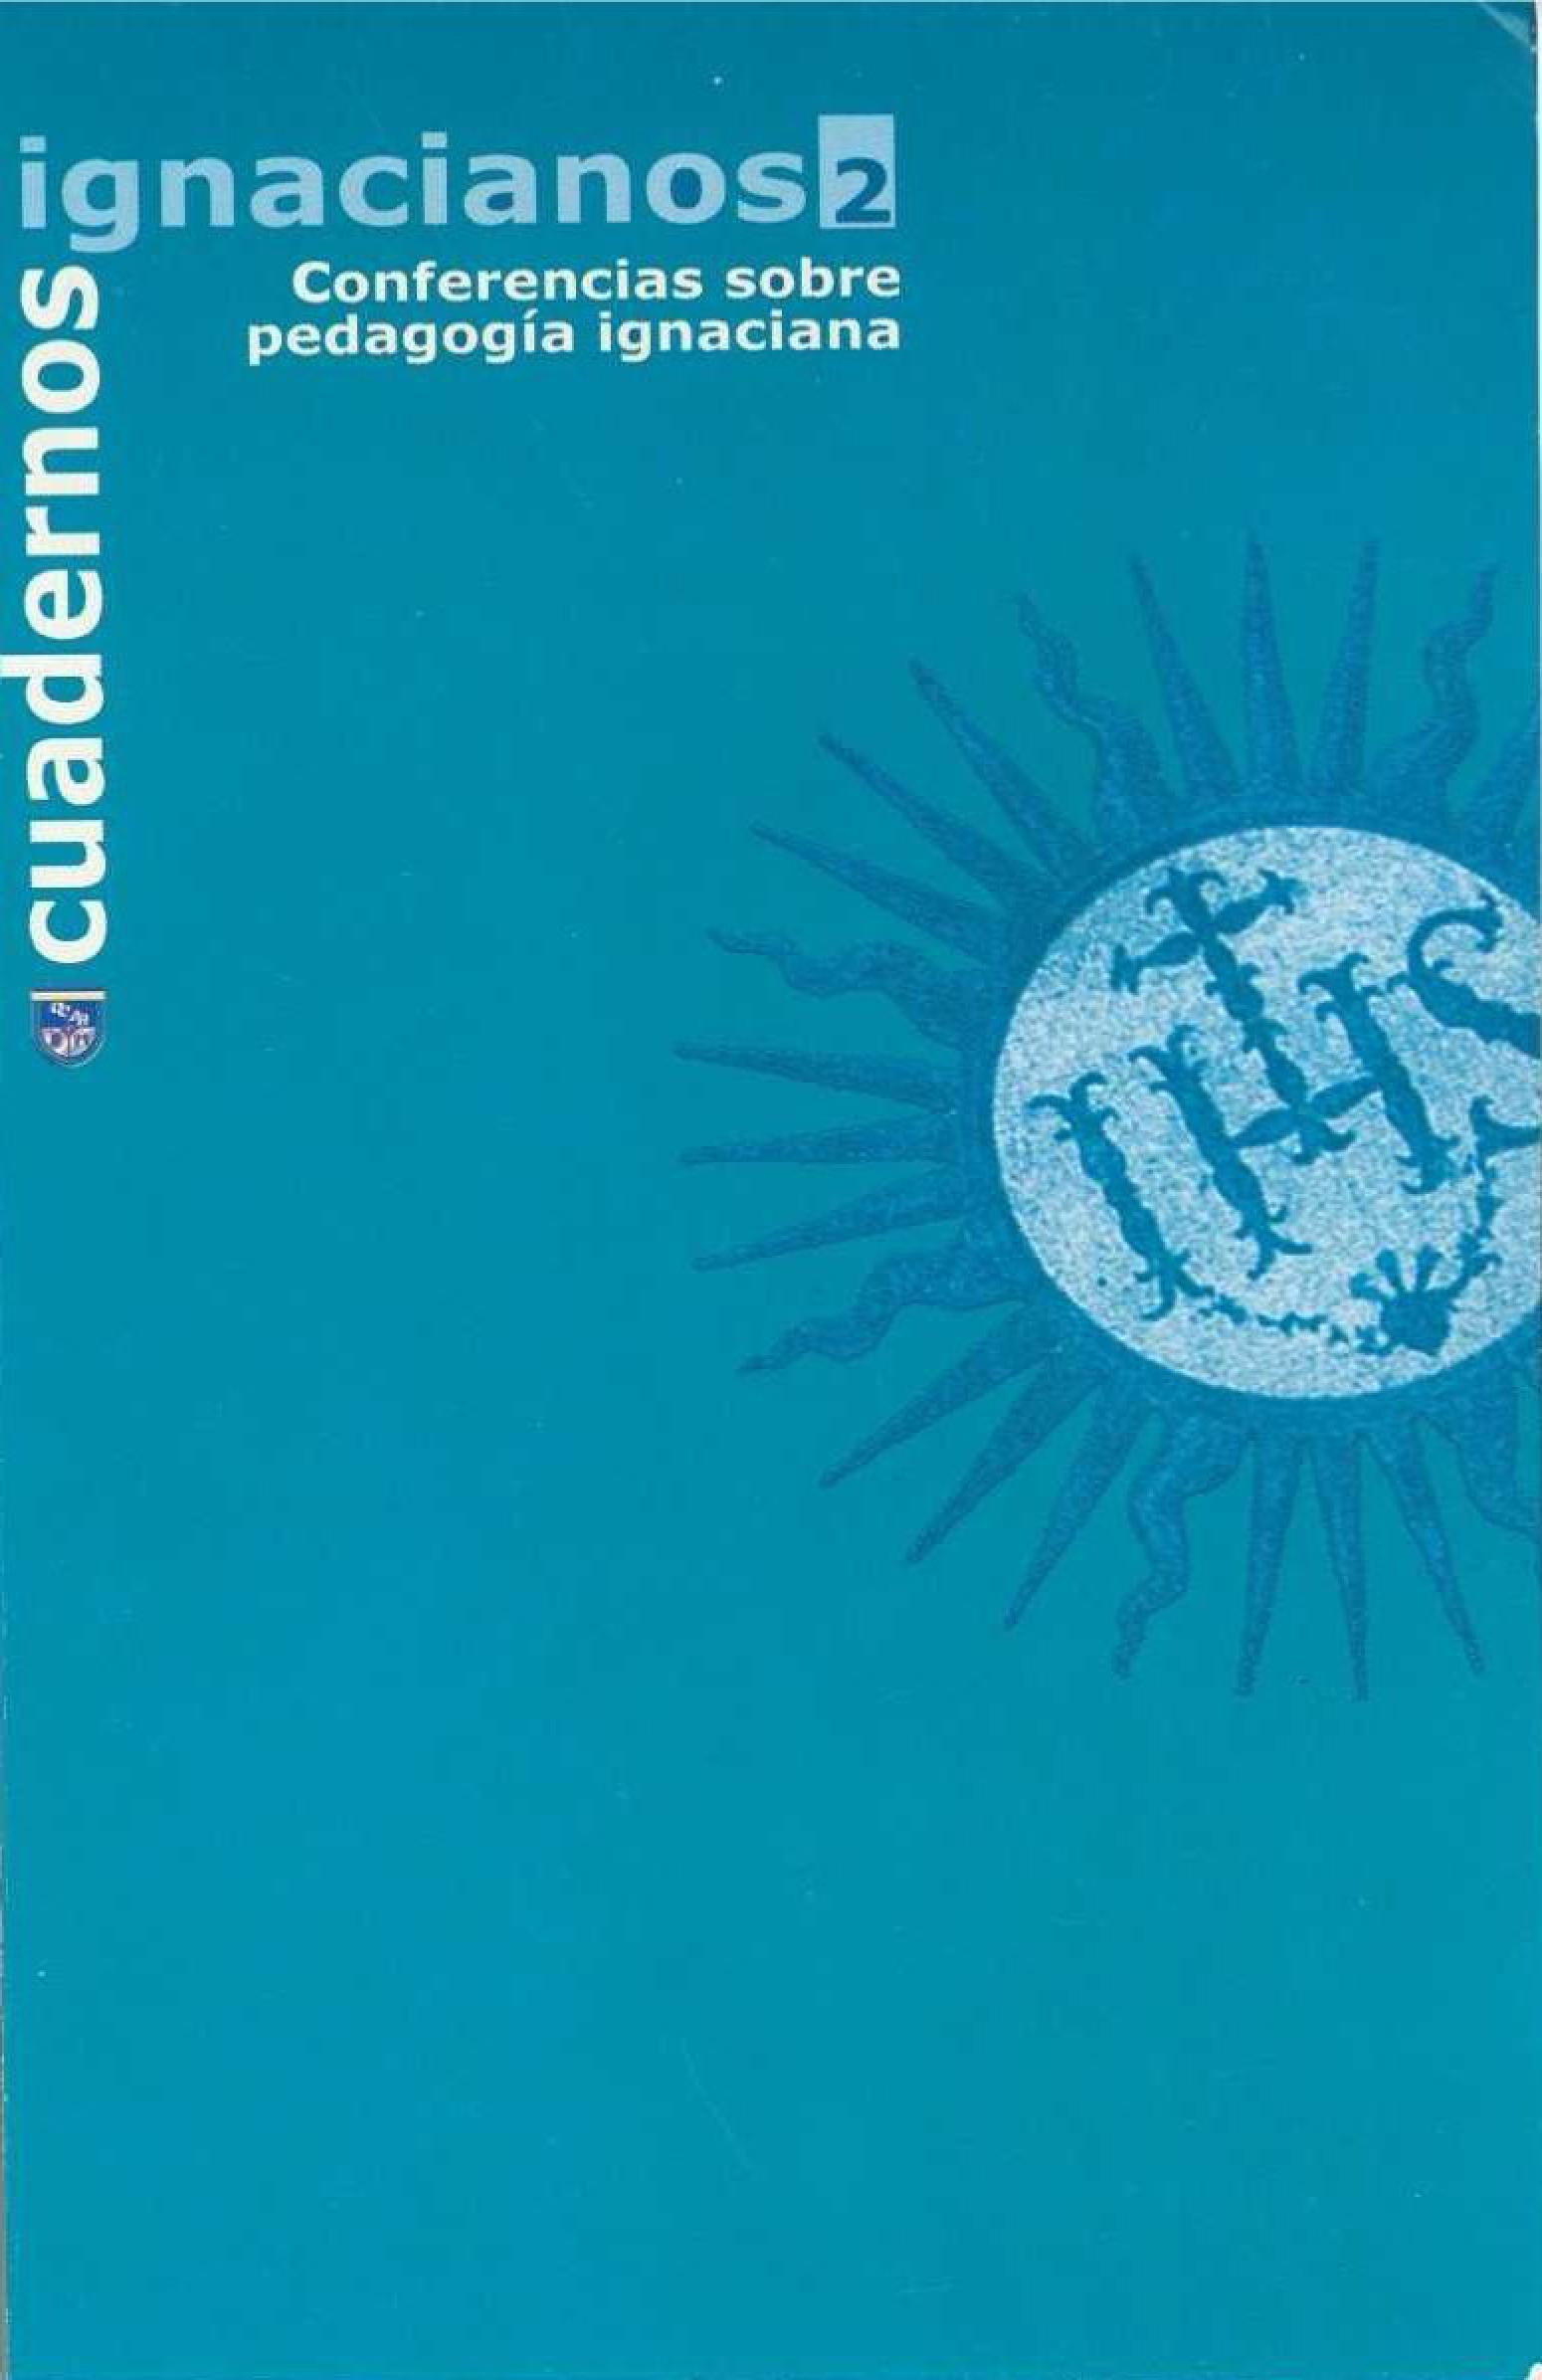                     Ver Núm. 2 (2000): Cuadernos Ignacianos
                